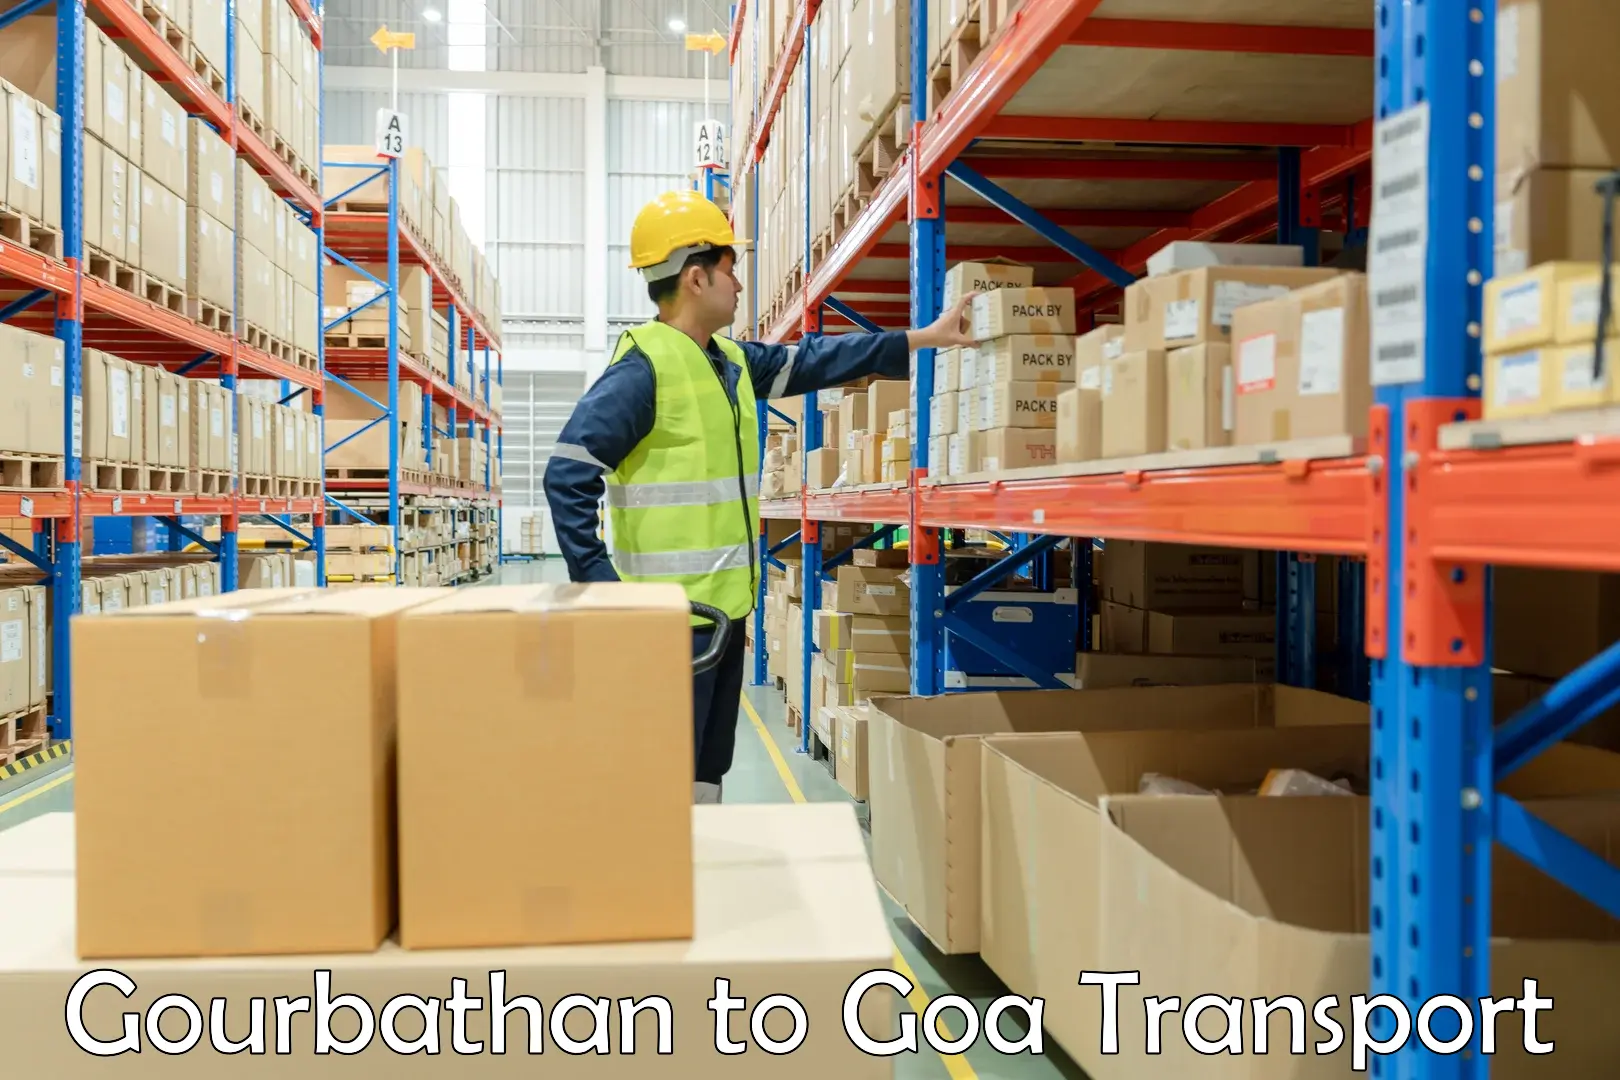 Intercity goods transport Gourbathan to Goa